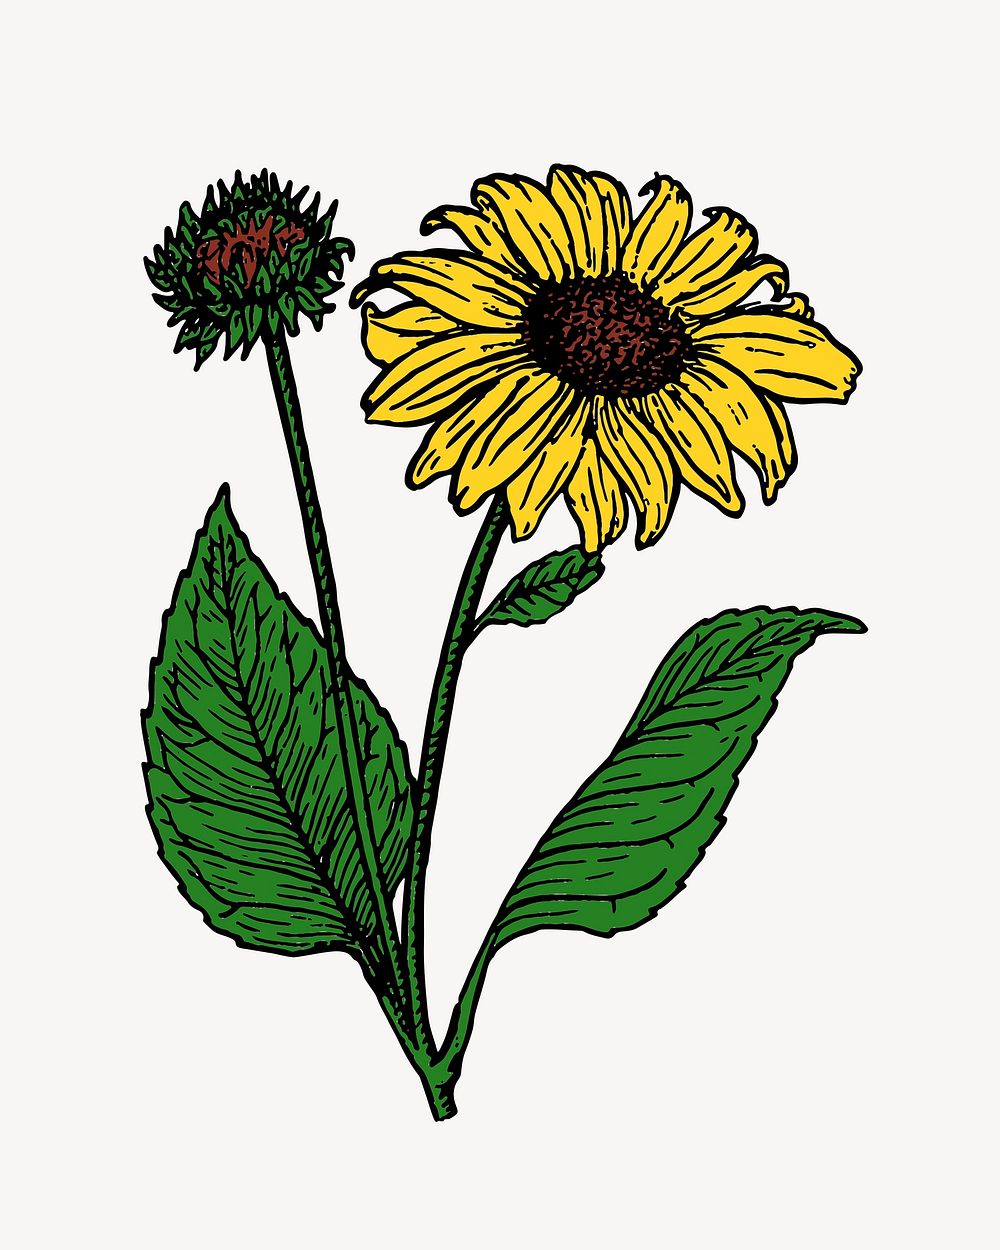 Sunflower illustration. Free public domain CC0 image.